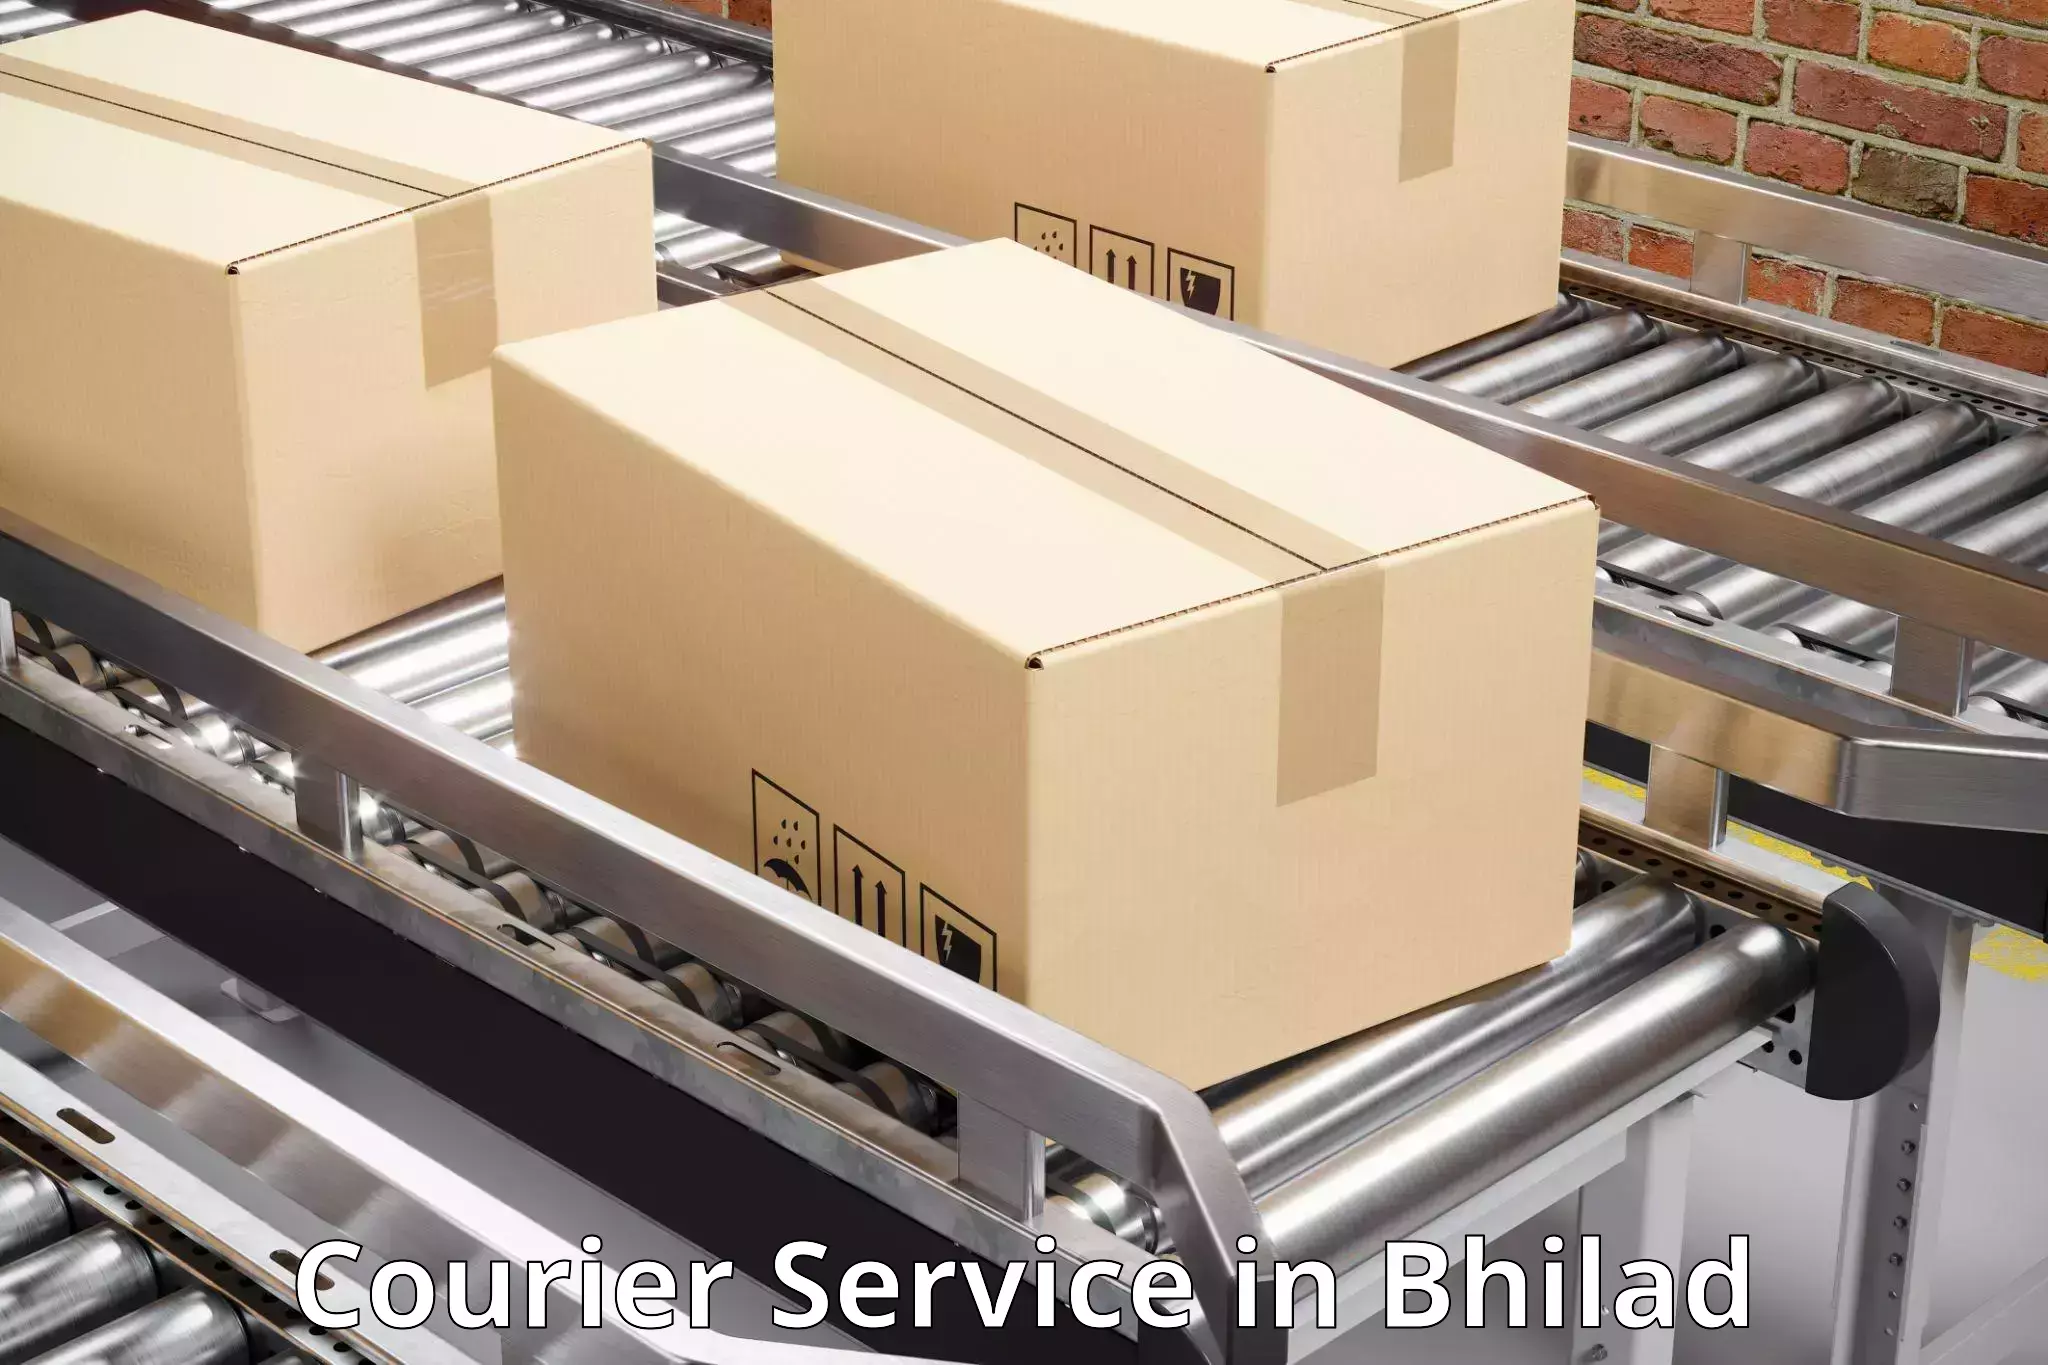 Modern parcel services in Bhilad